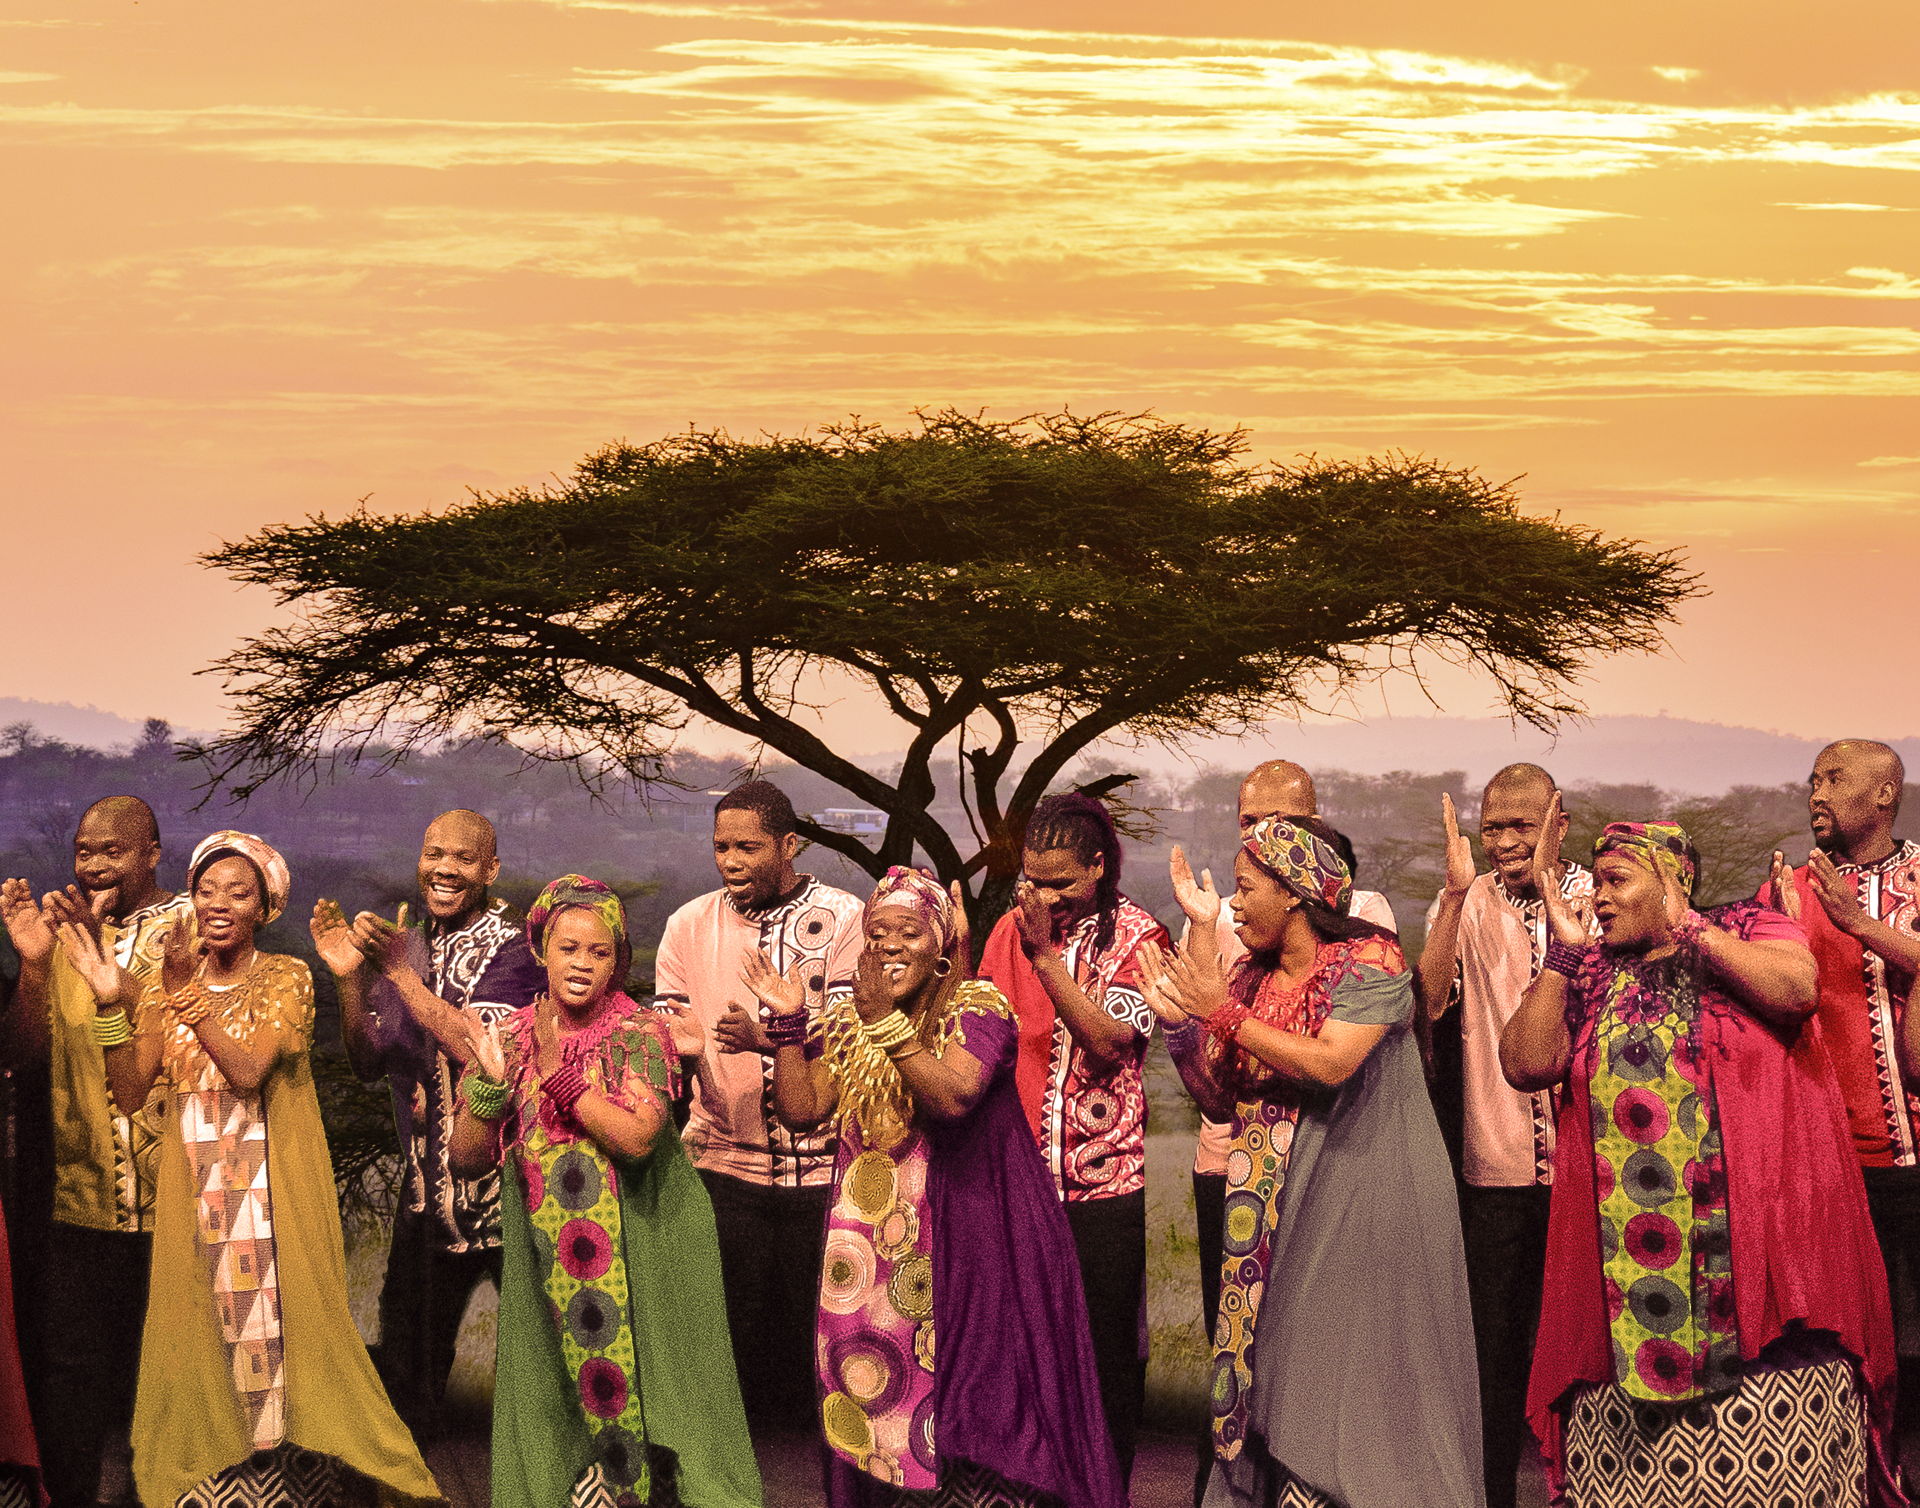 Het wereldberoemde Soweto Gospel Choir brengt traditionele en populaire gospels naar De Tamboer. Geniet van een avond vol zinderende energie, authentieke Zuid-Afrikaanse dans en prachtige, ontroerende harmonieën.